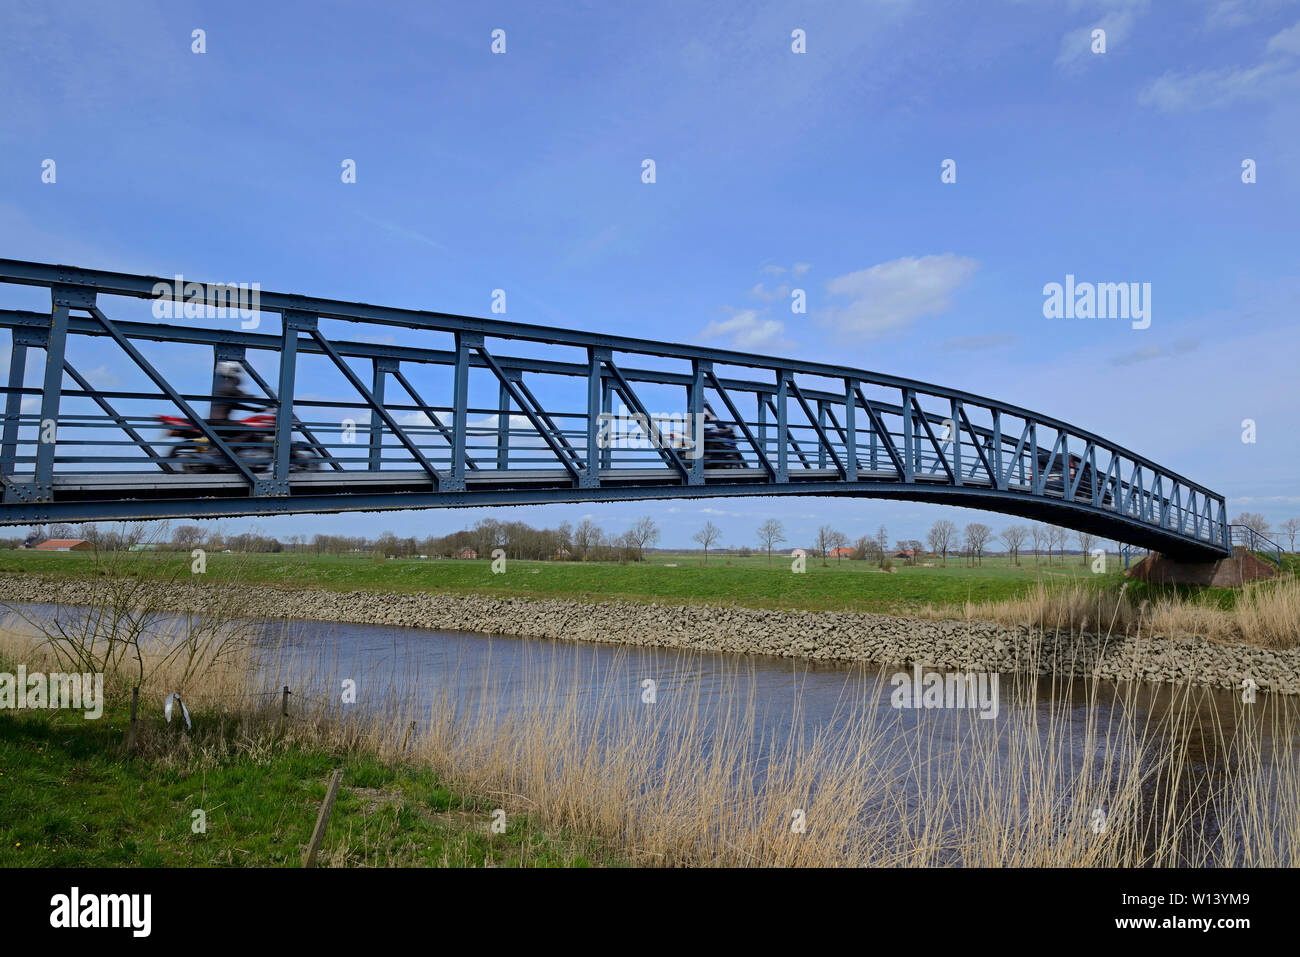 Amdorf, Allemagne - 12 avril 2015 : le pont traversant la rivière leda à amdorf avec une longueur de 50m, une largeur totale de 2,5 m, une largeur d'une voie de 1,85 m et Banque D'Images